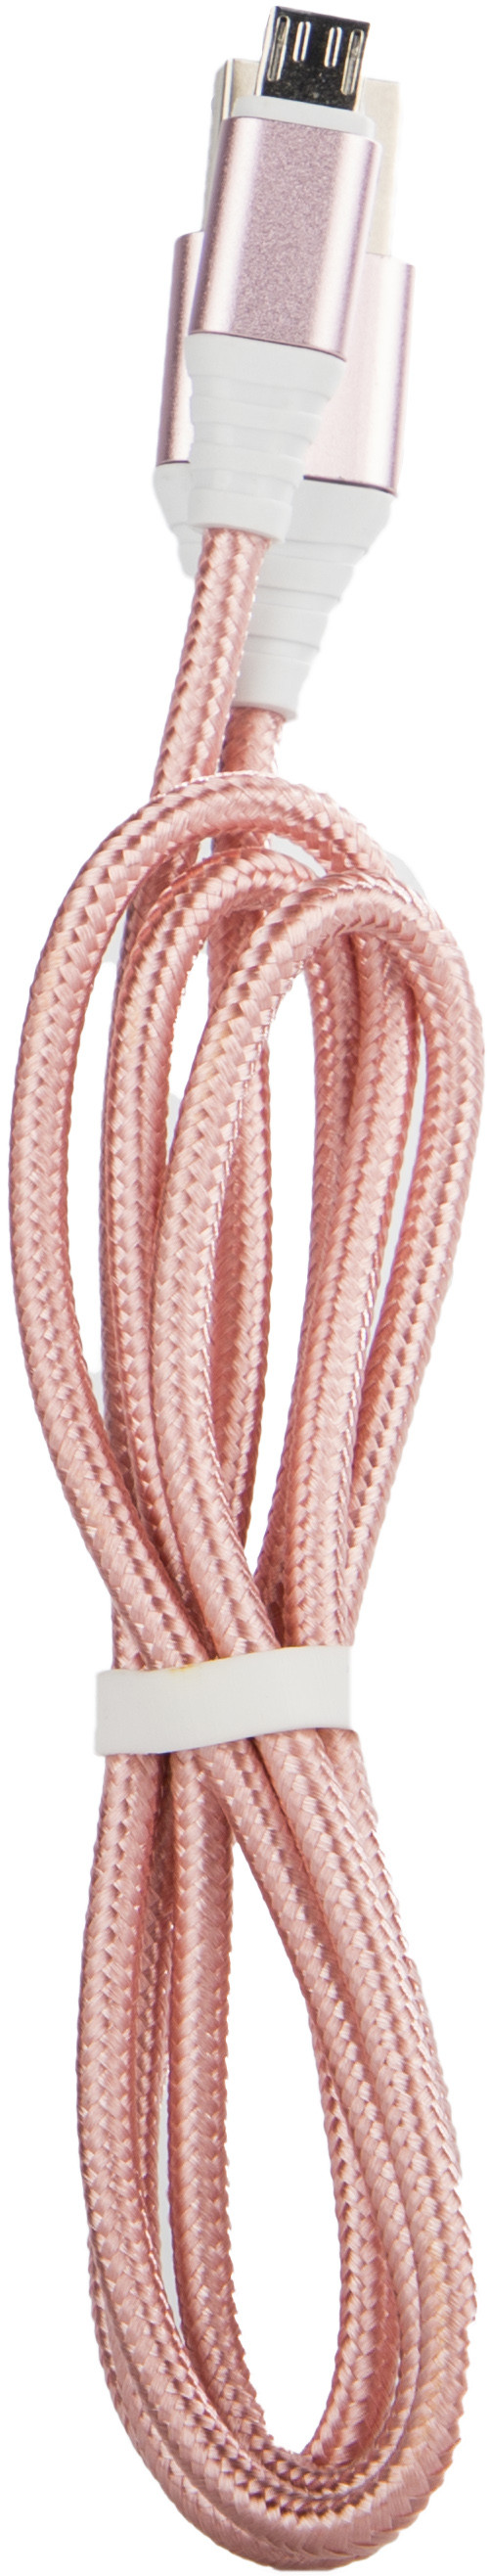 Omega kaabel microUSB 1m punutud, roosa (44260)